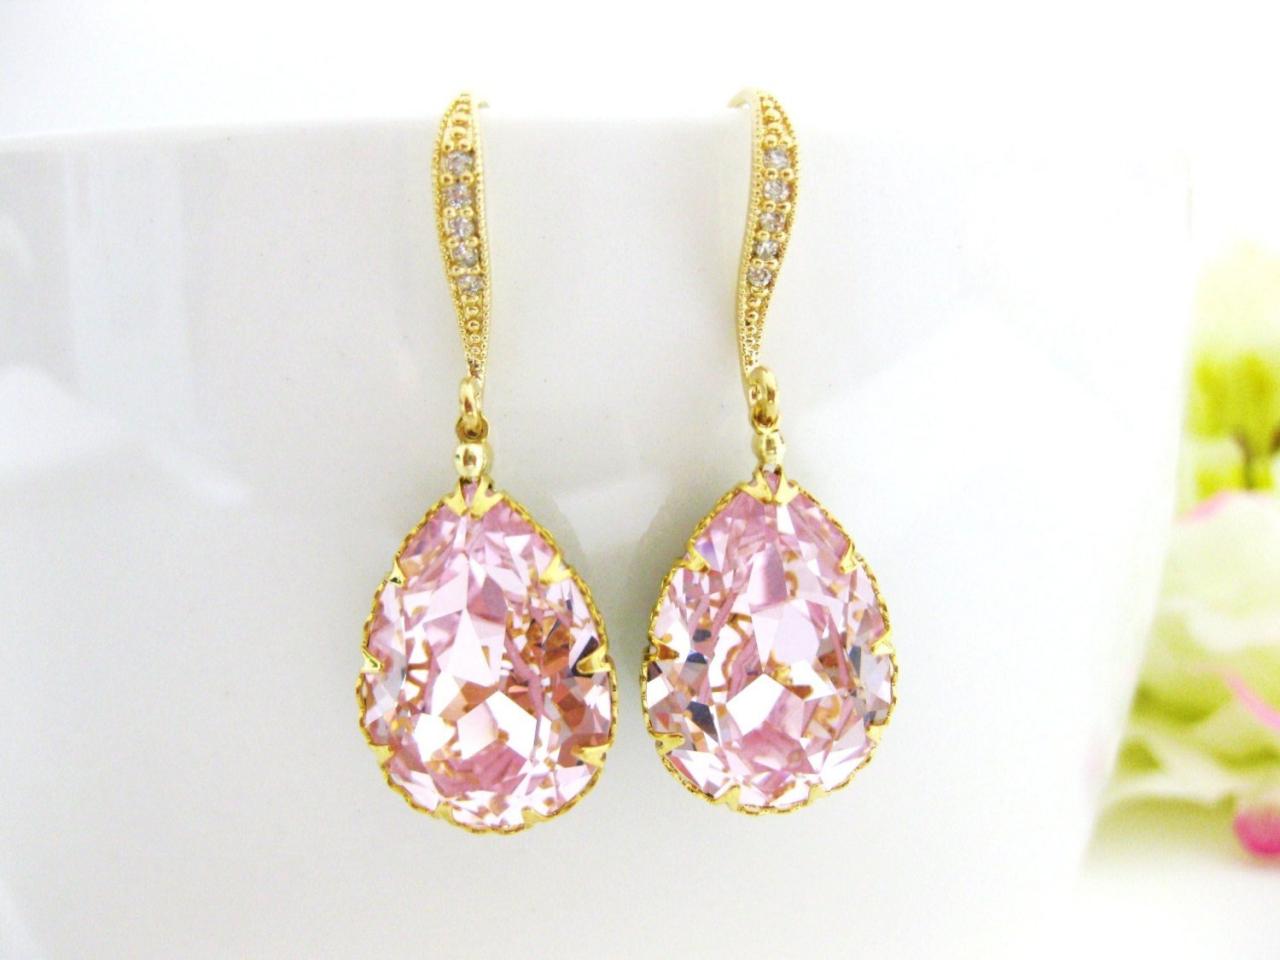 Bridal Blush Pink Teardrop Earrings Swarovski Rosaline Earrings Light Pink Earrings Bridesmaids Gift Wedding Jewelry Bridal Jewelry (e136)